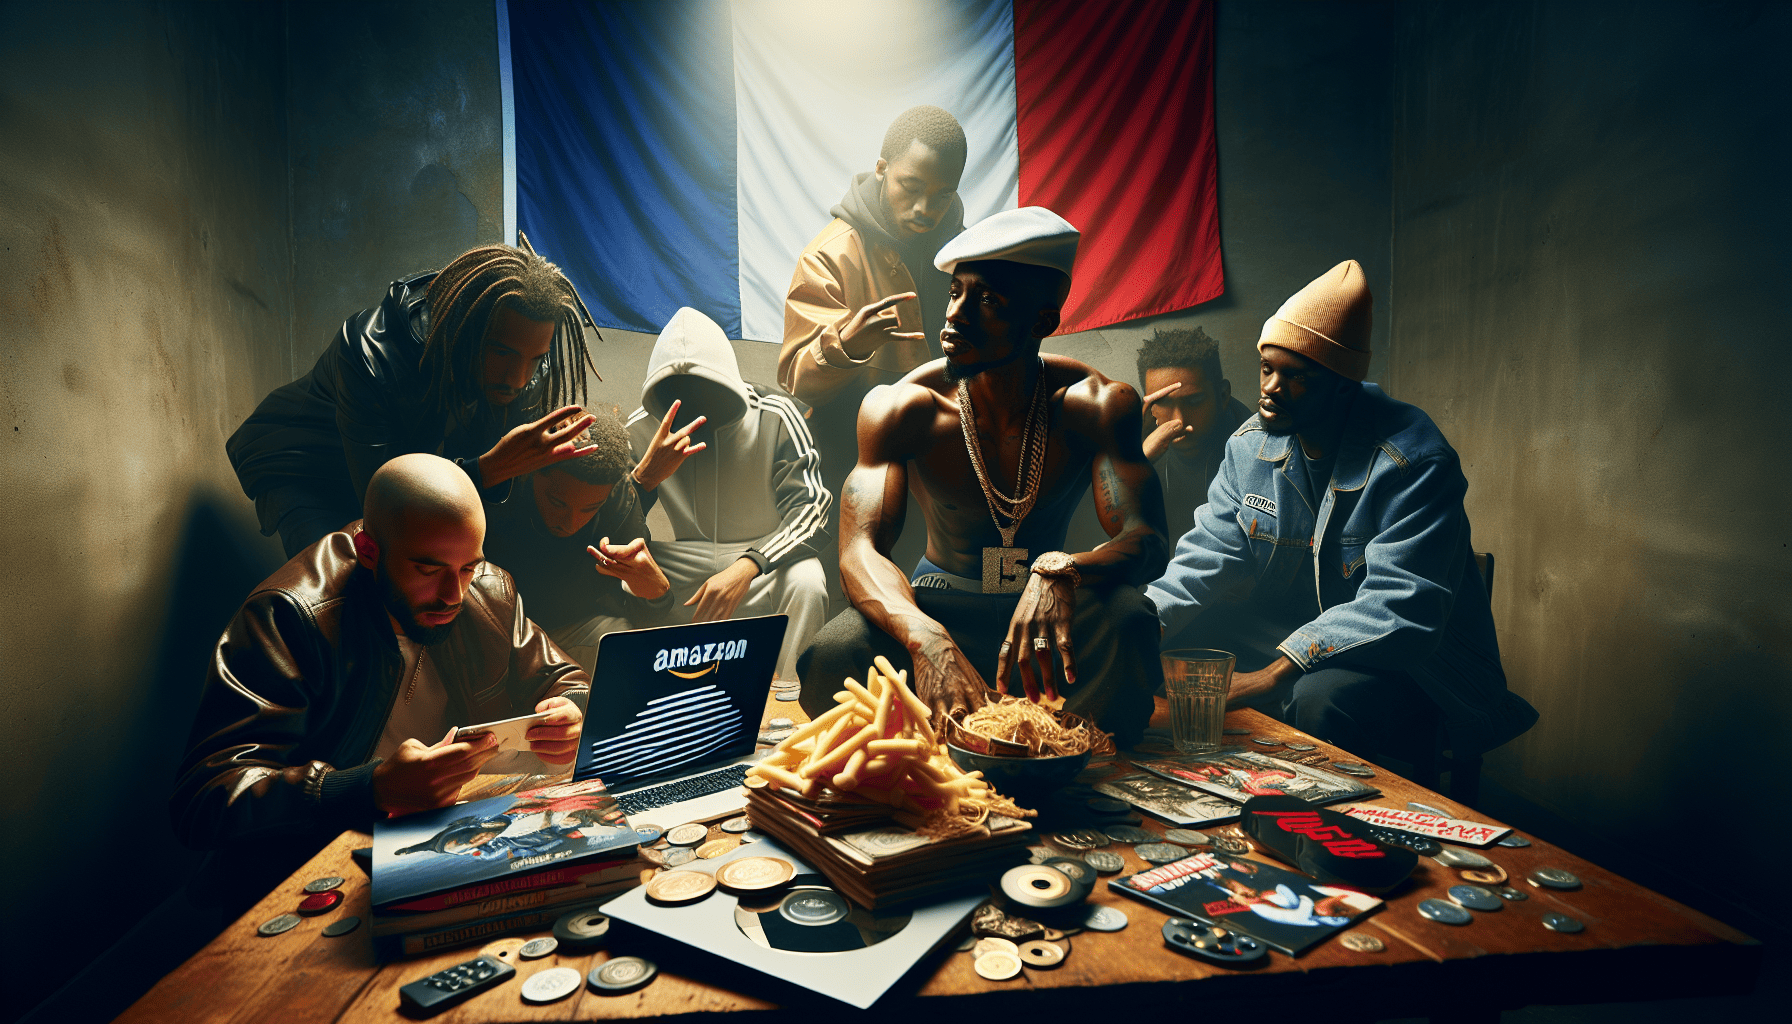 découvrez l'impact du streaming sur le rap français : un univers en péril ? analyse et point de vue sur la situation actuelle.